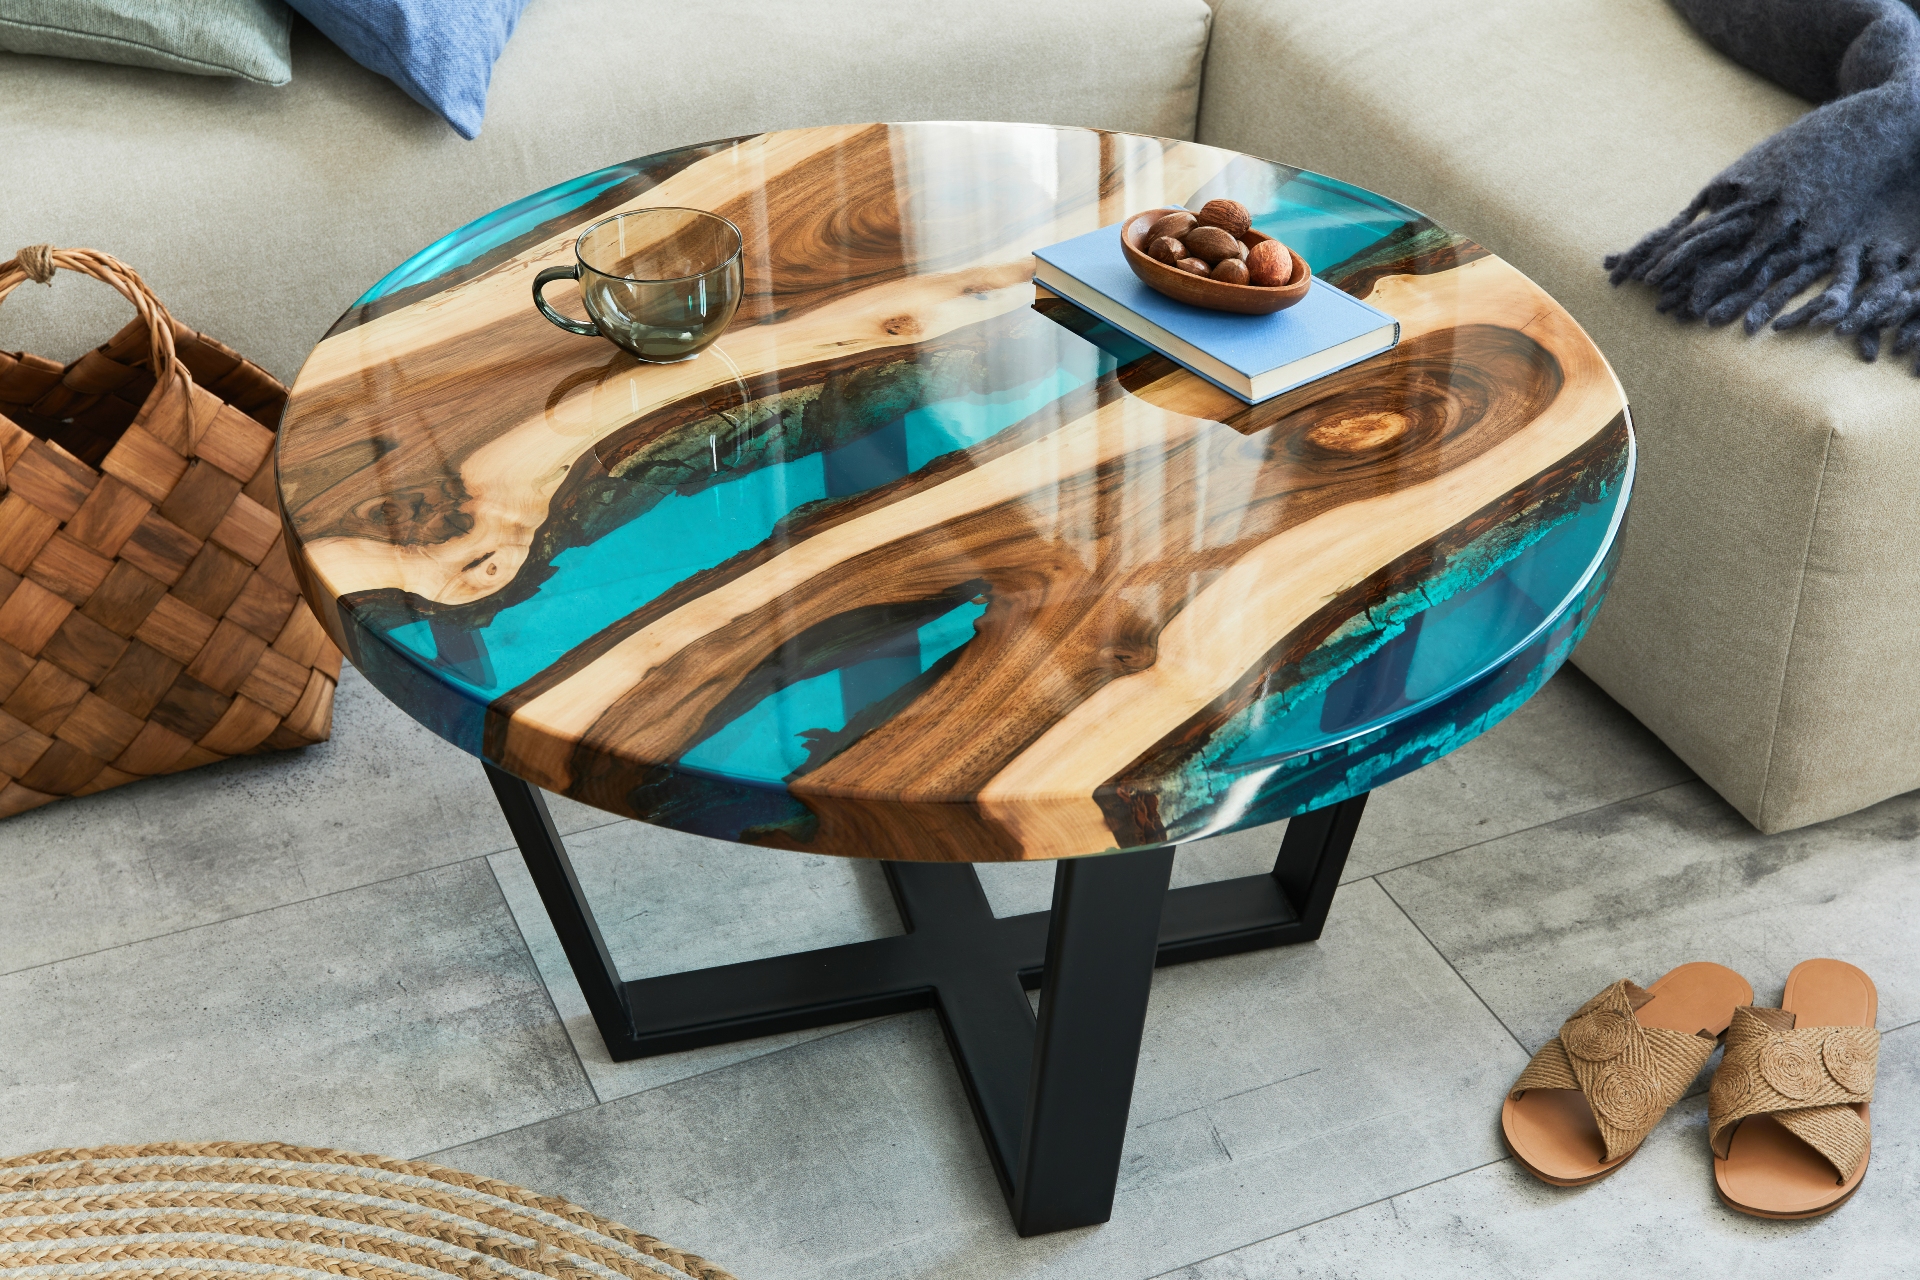 Небольшой аккуратный стол-реку идеально круглой формы стоит использовать как прикроватную тумбу или подставку под освещение в гостиной